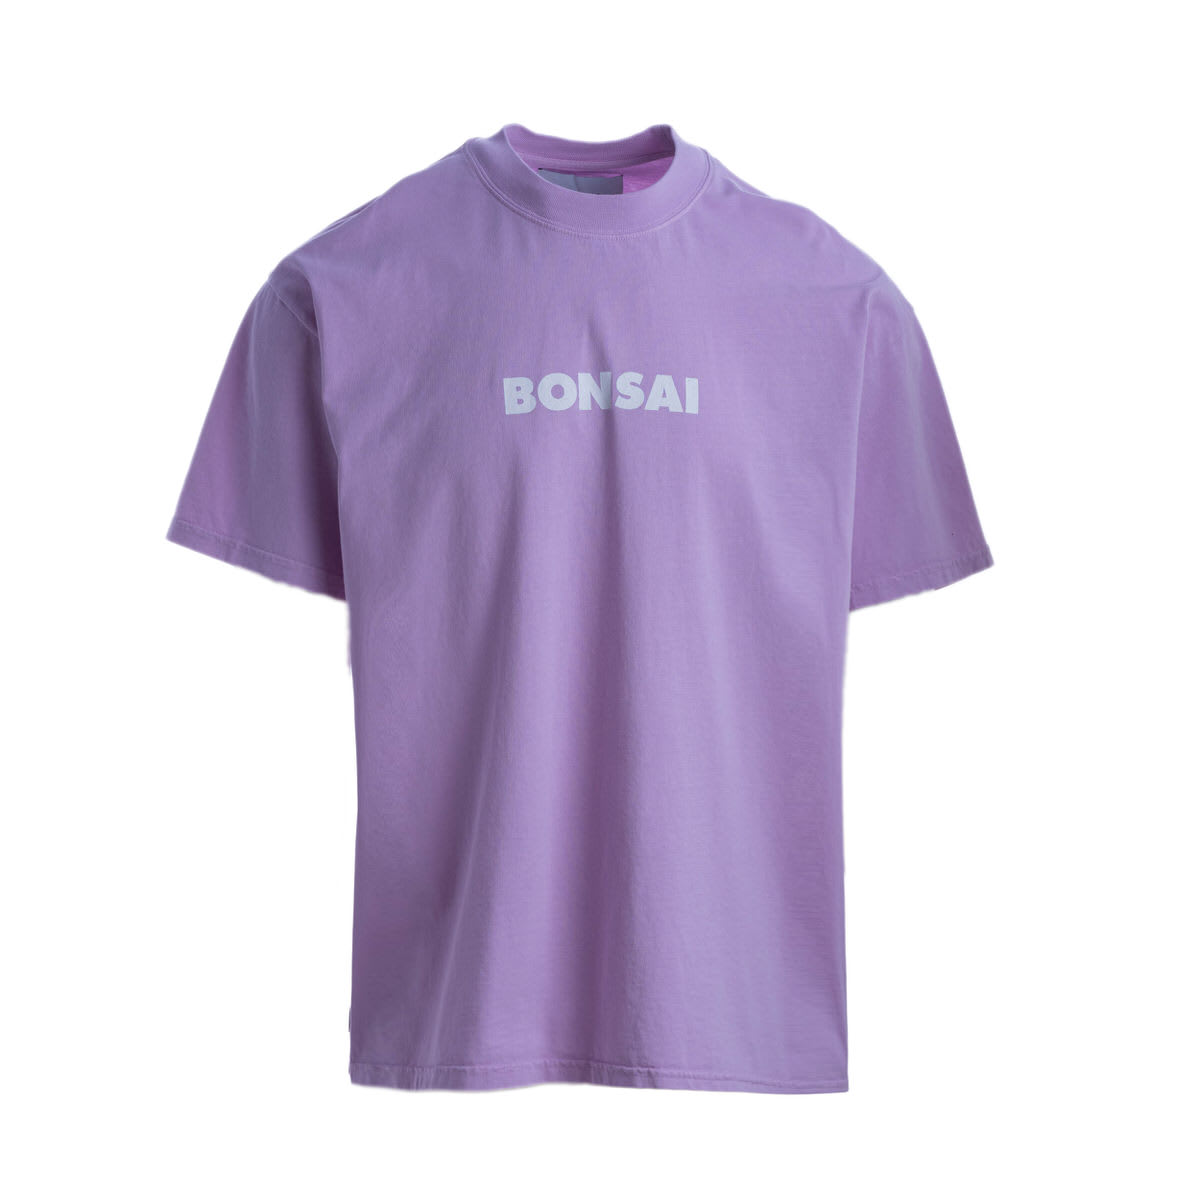 Bonsai Cotton T-shirt